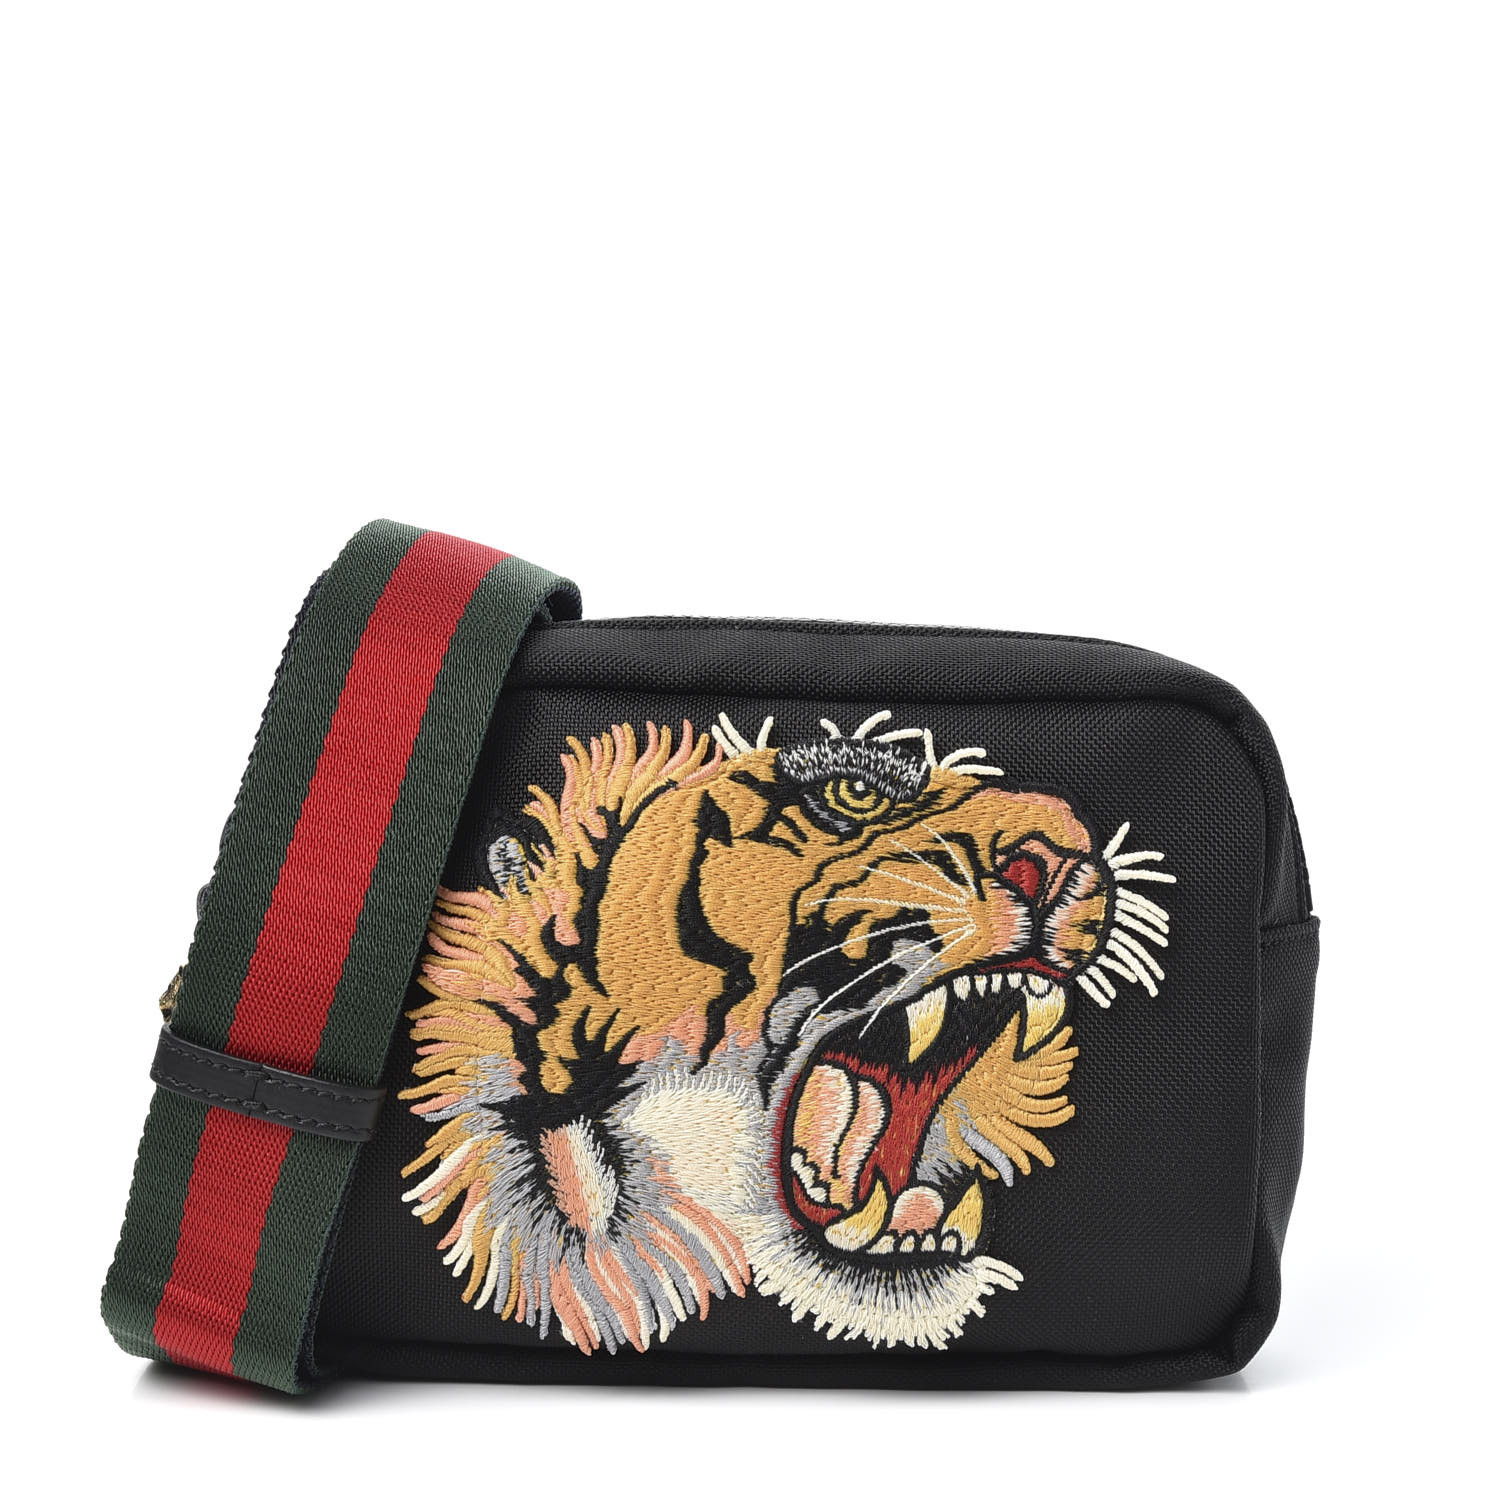 GUCCI Canvas Embroidered Tiger Messenger Bag Black 569892